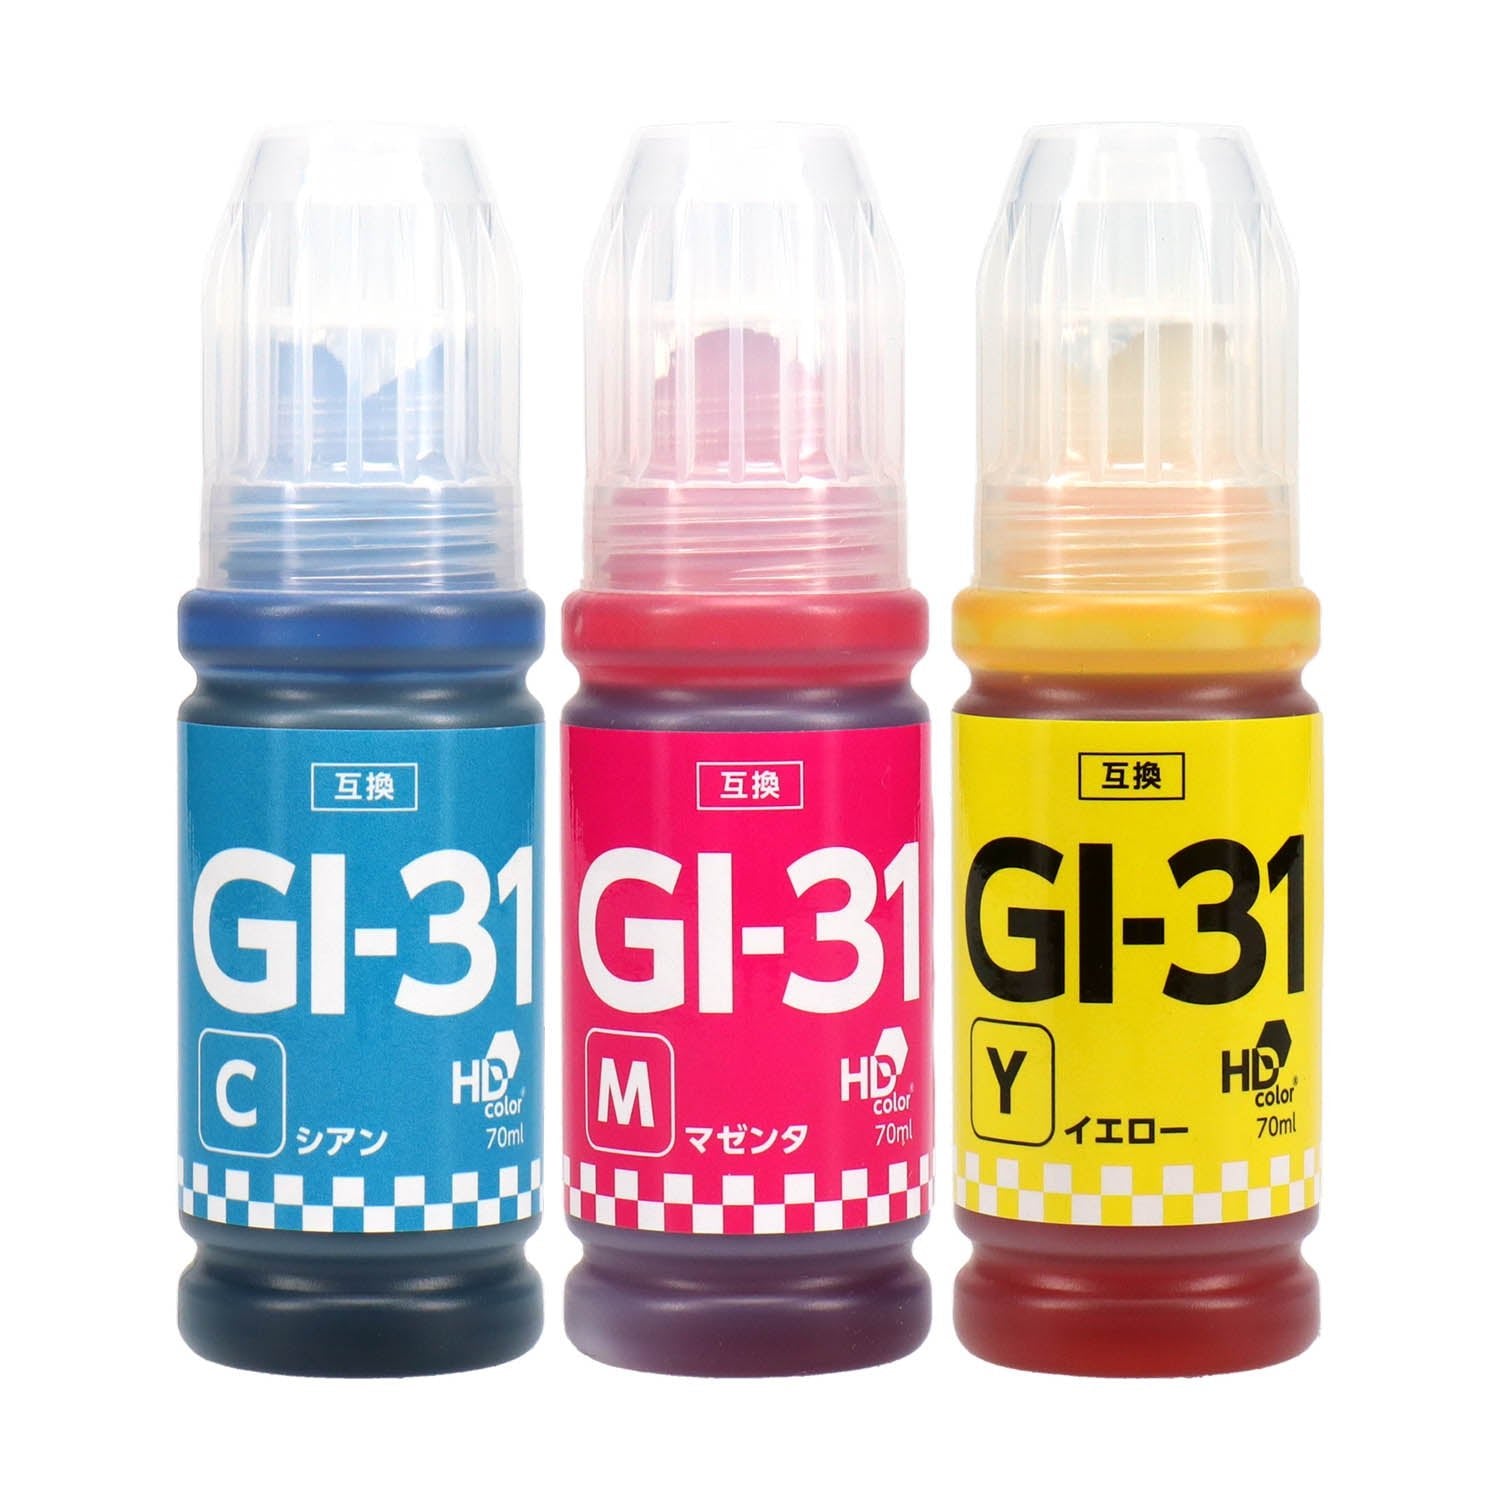 キヤノン用 GI-31 互換インクボトル カラー3色